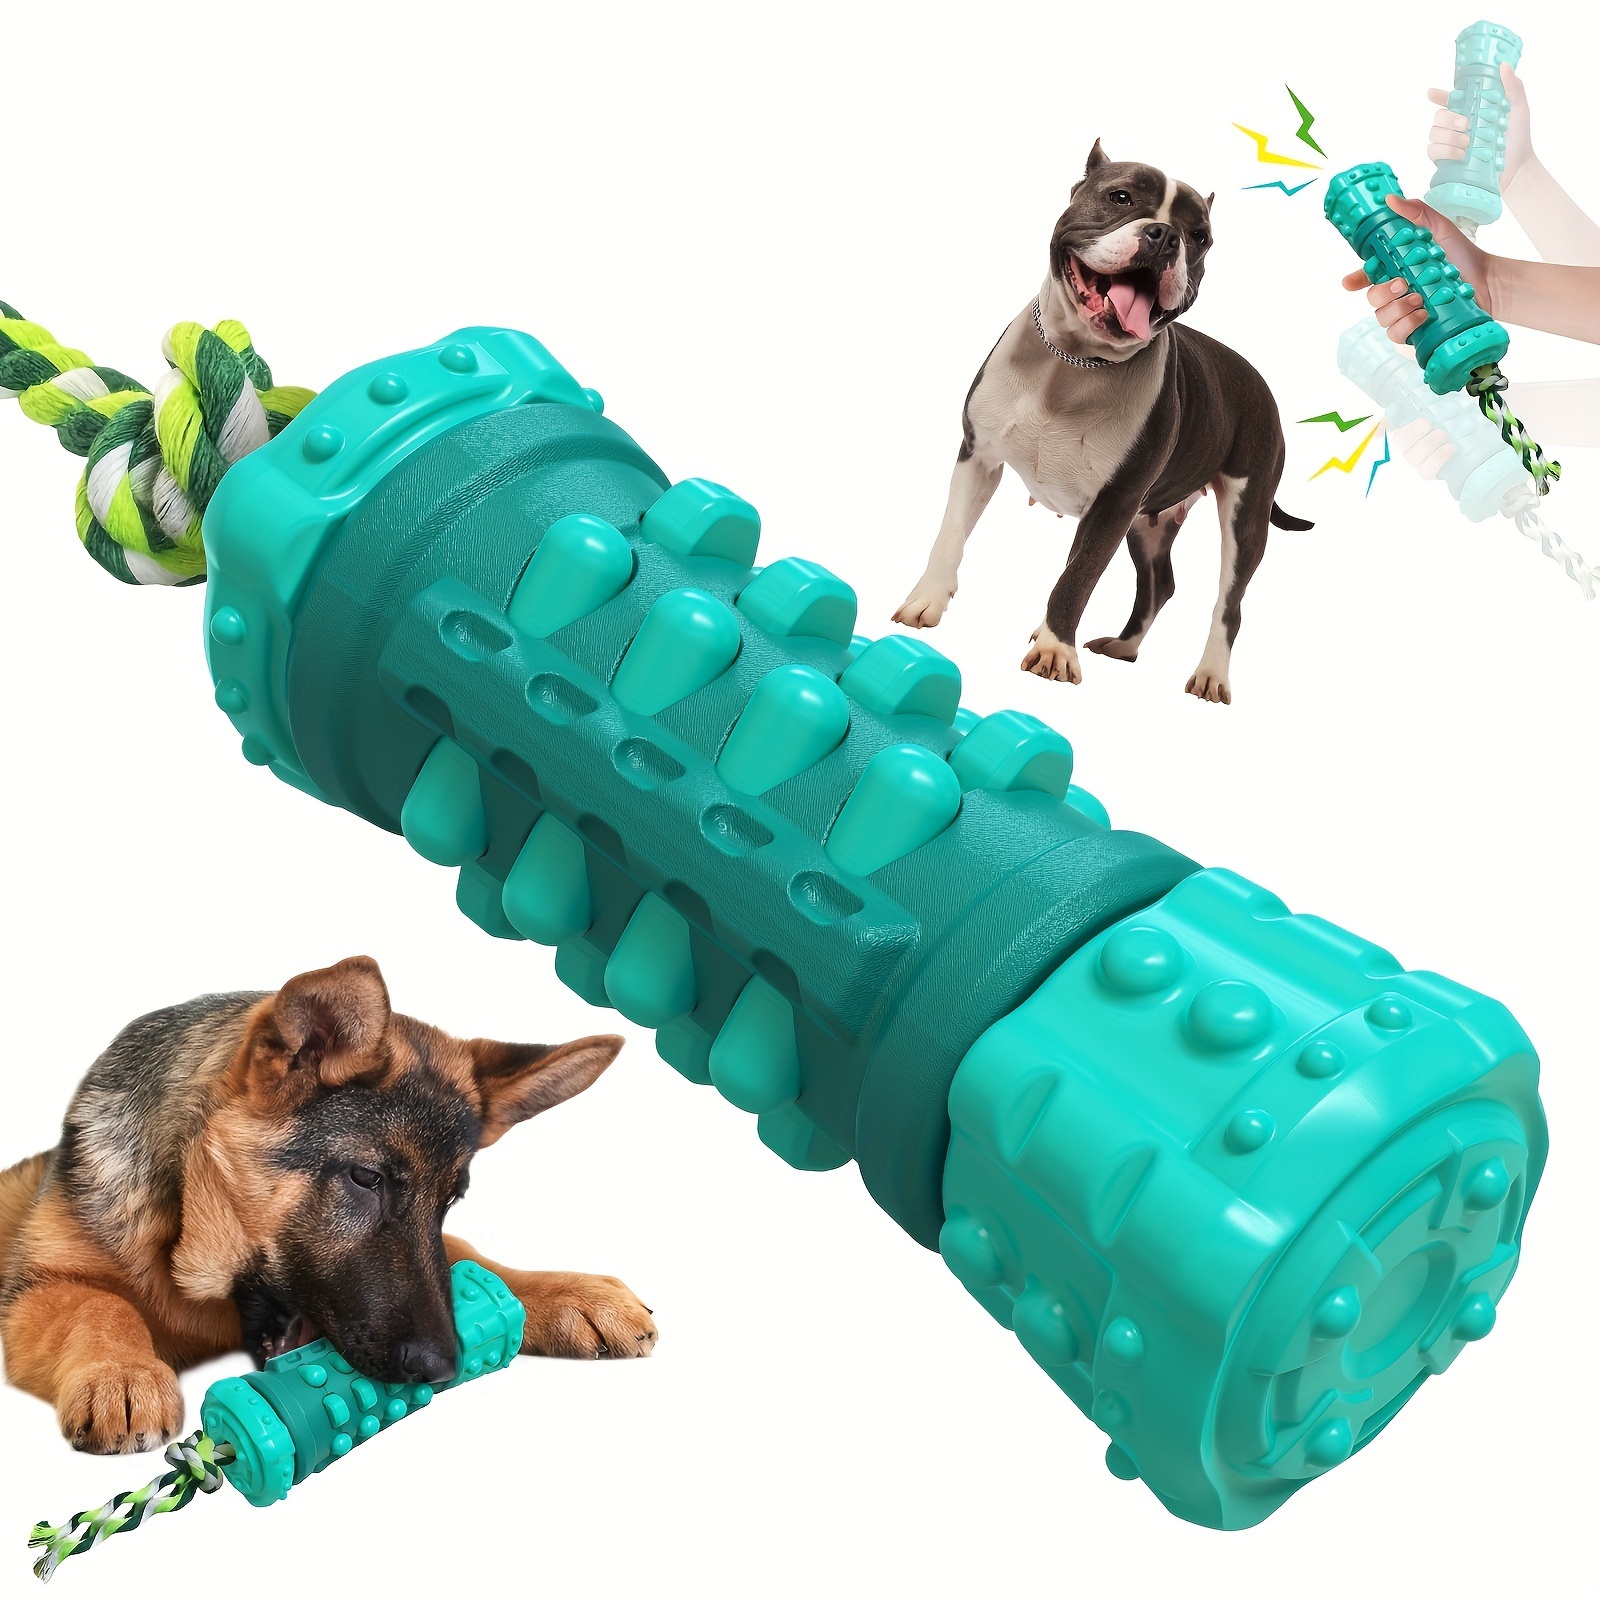 Pelota de fútbol para perros con correas, juguetes interactivos grandes de  8 pulgadas, juguetes interactivos para perros para tira y afloja, regalos